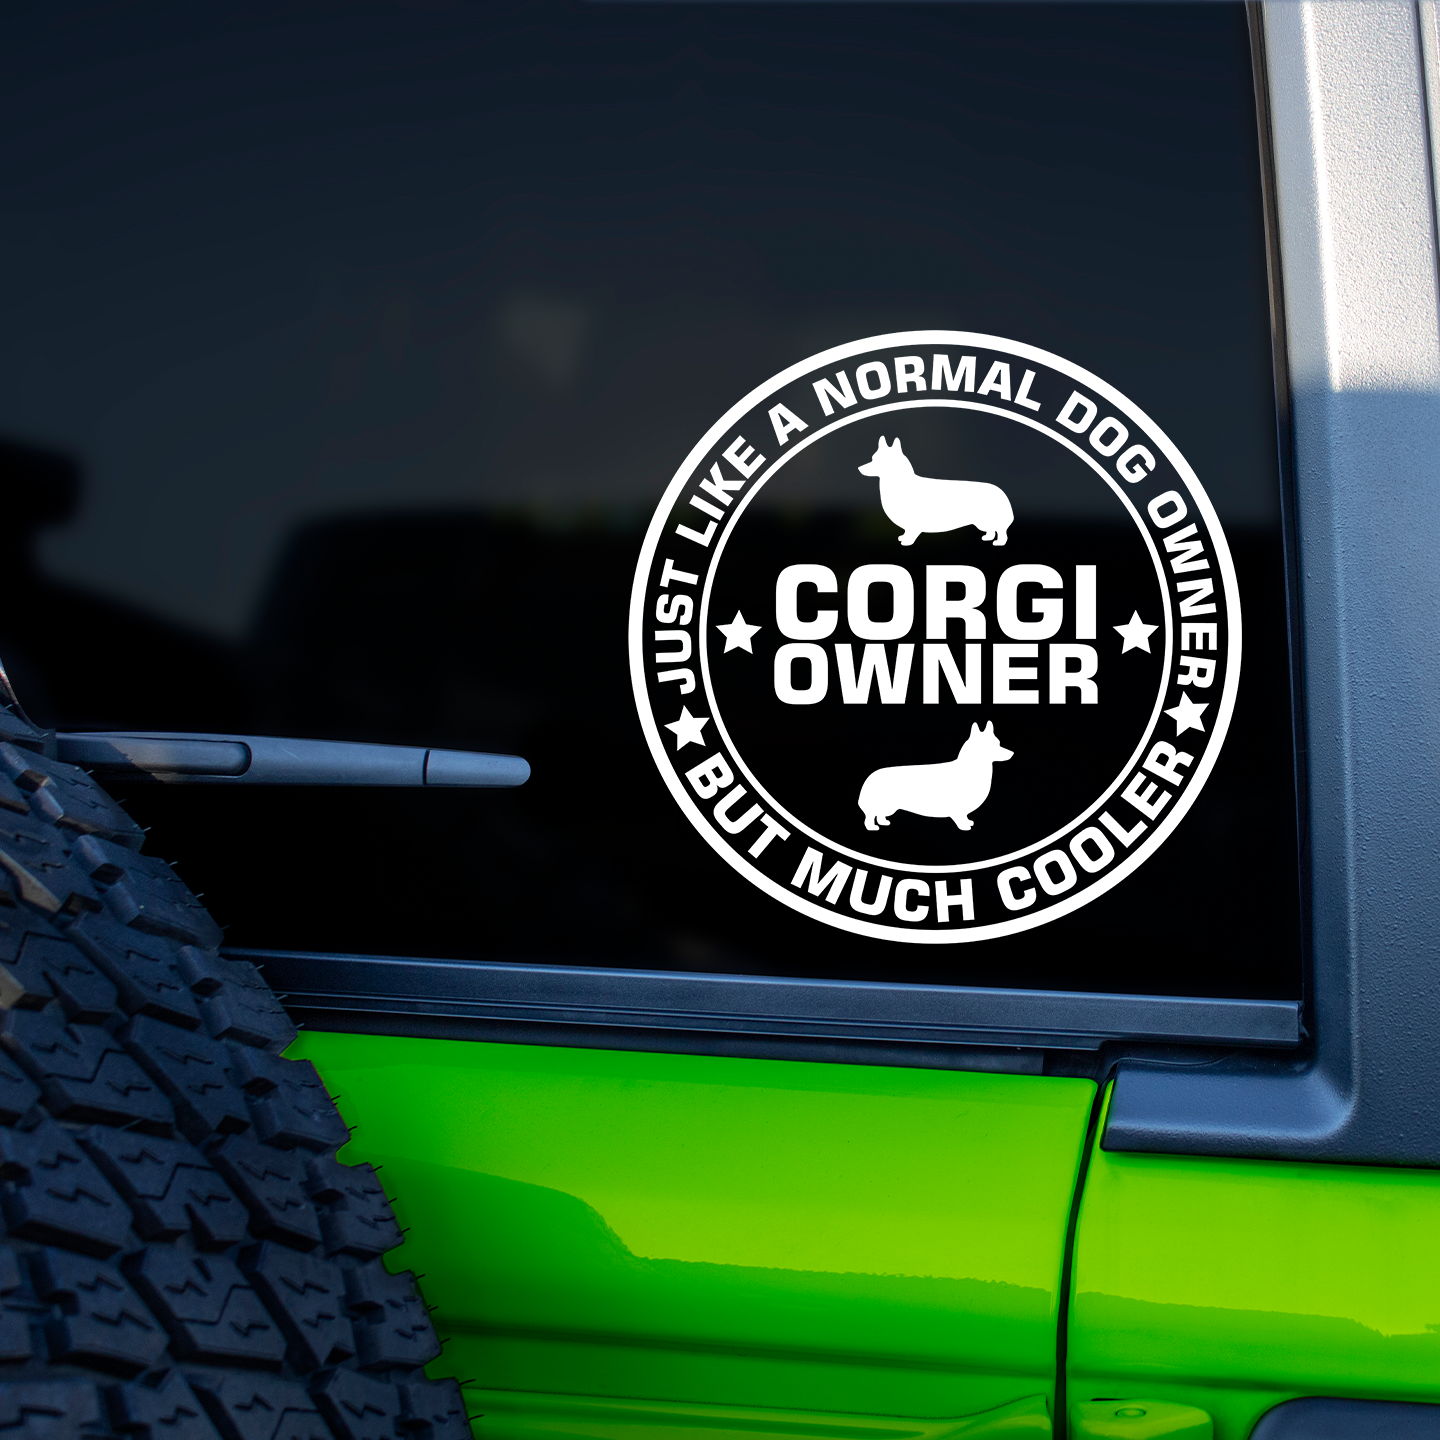 Corgi Owner Sticker